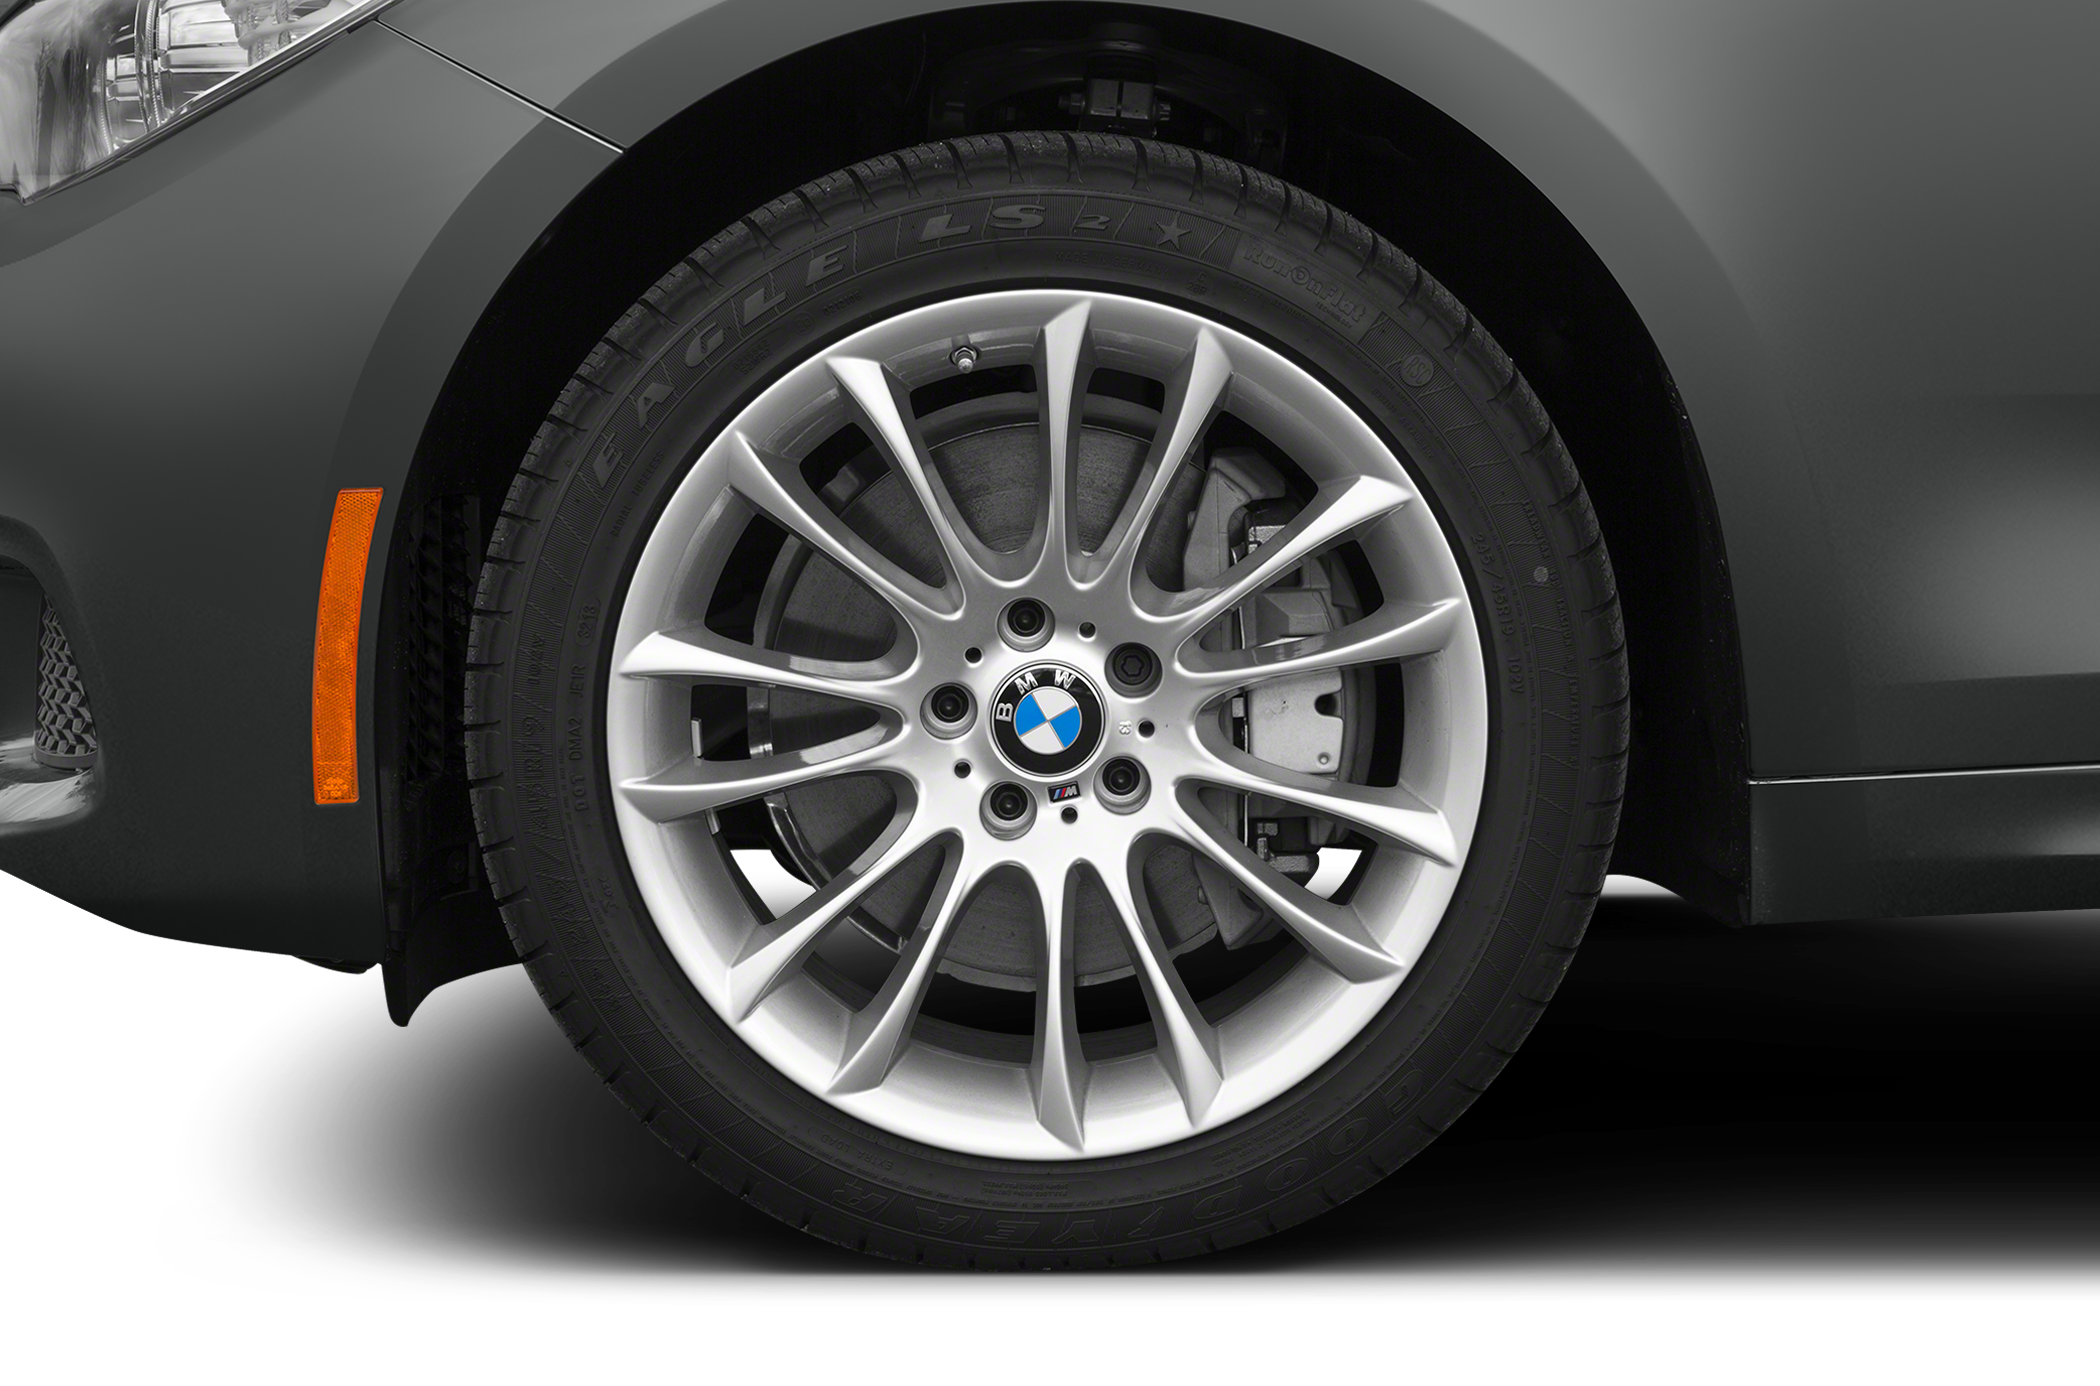 2014 BMW 550 Gran Turismo